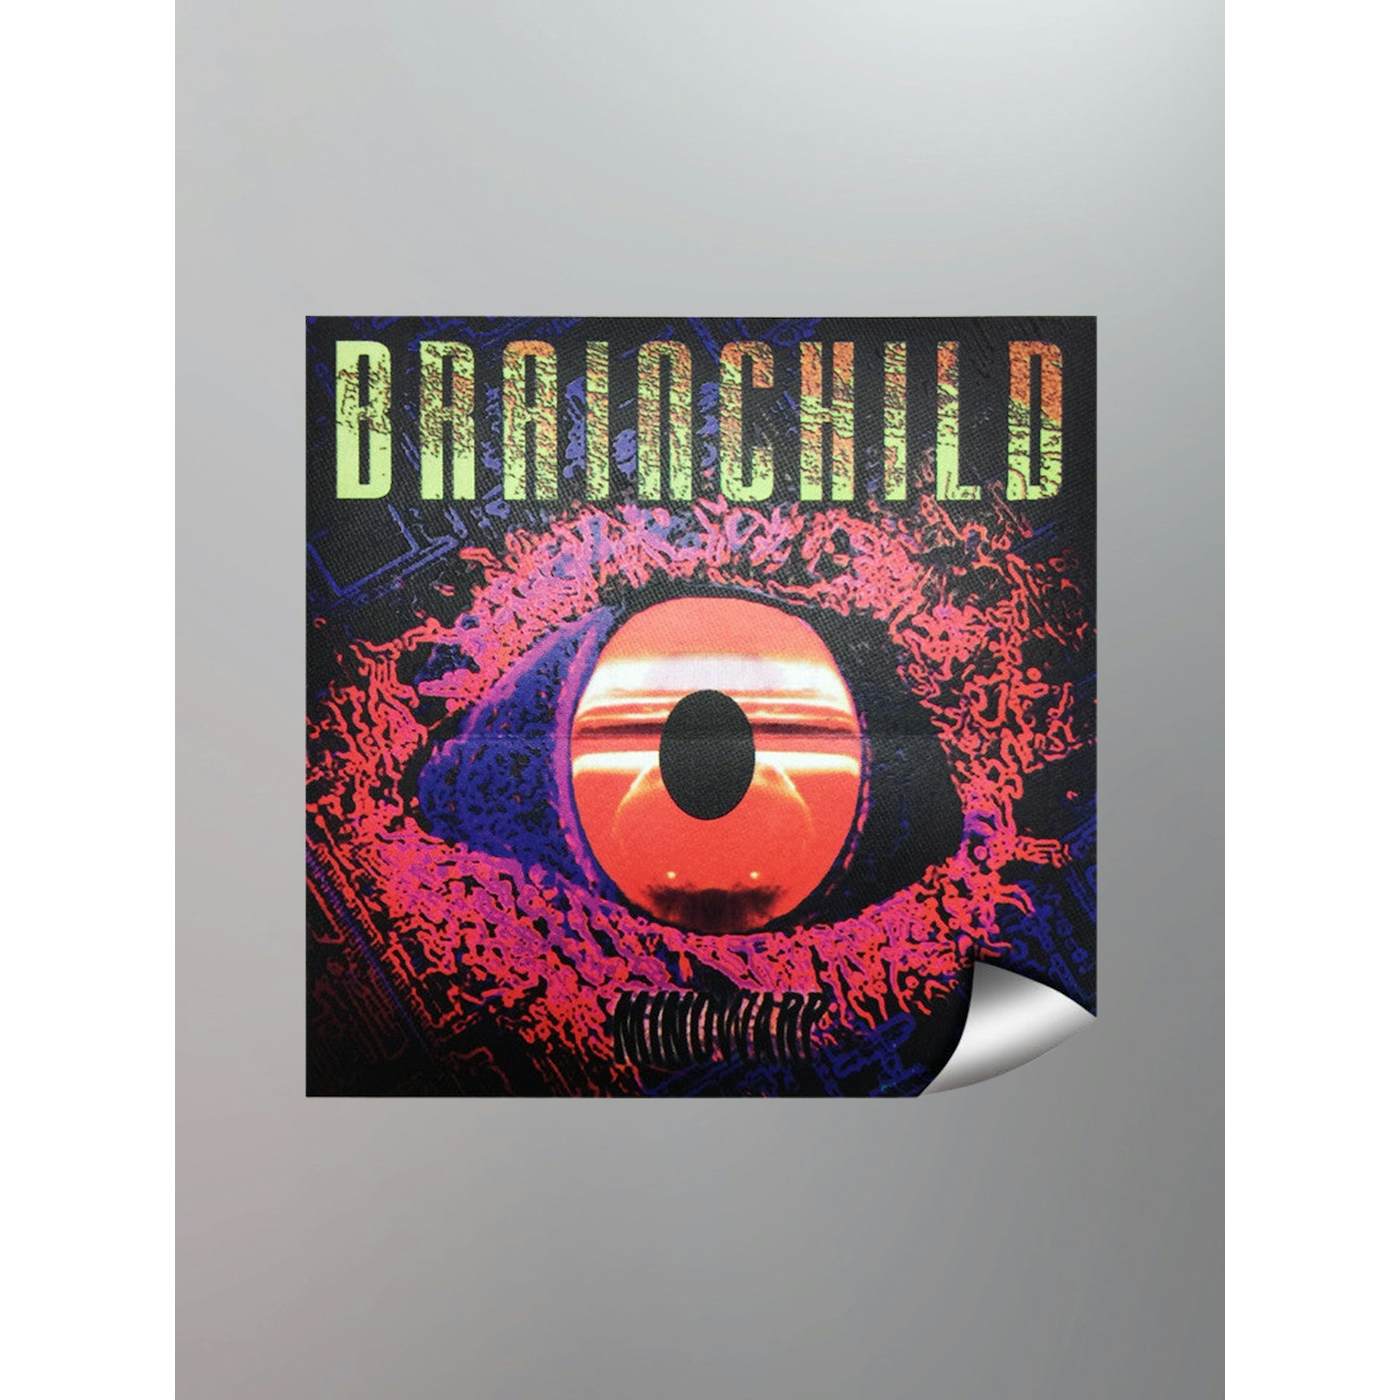 Circle of Dust - Original Brainchild (Mindwarp) Vinyl Sticker 6x6"